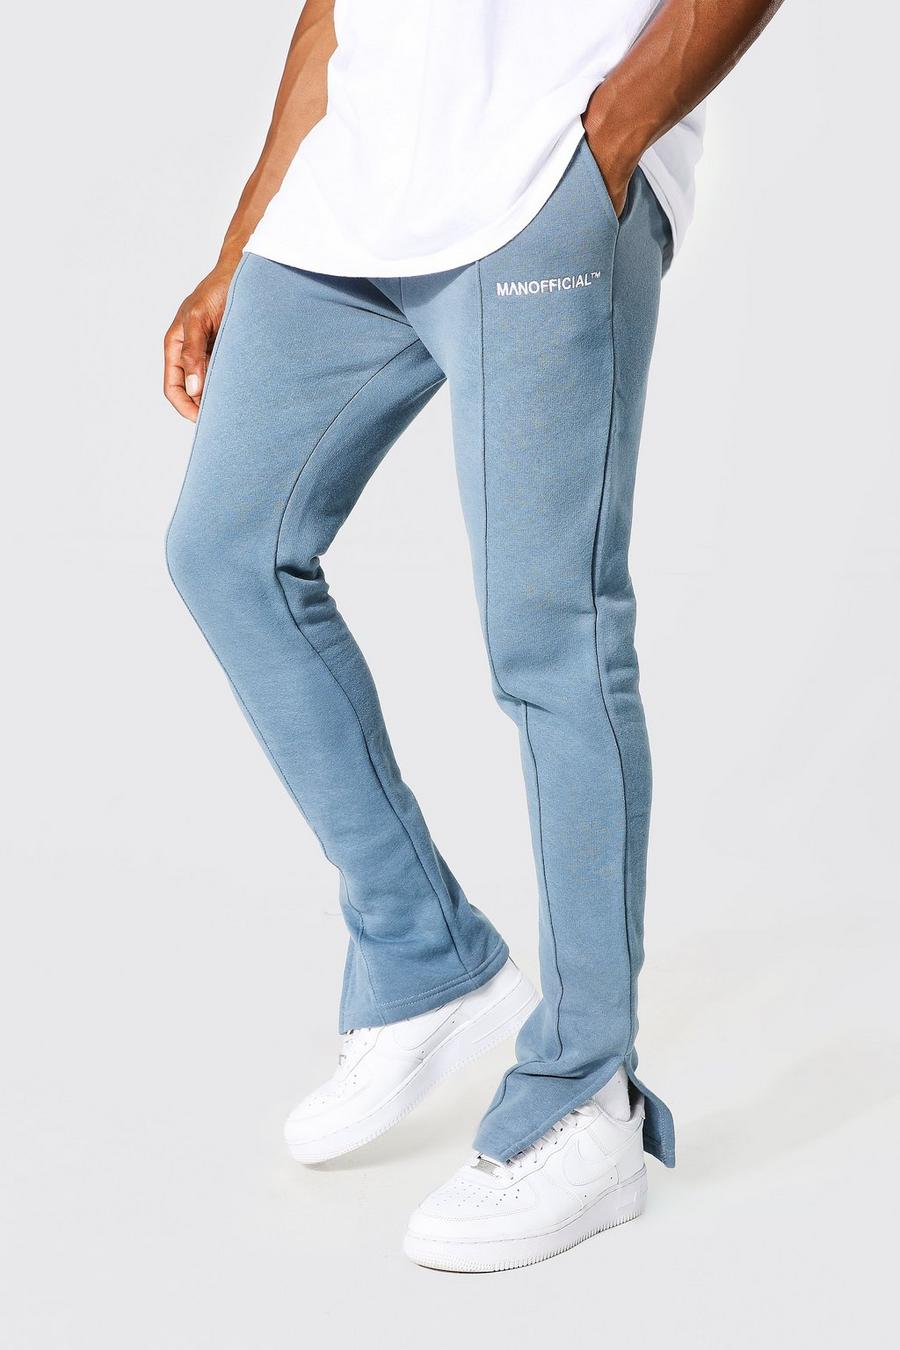 Pantaloni tuta Man Official Slim Fit con spacco sul fondo, Dusty blue azzurro image number 1